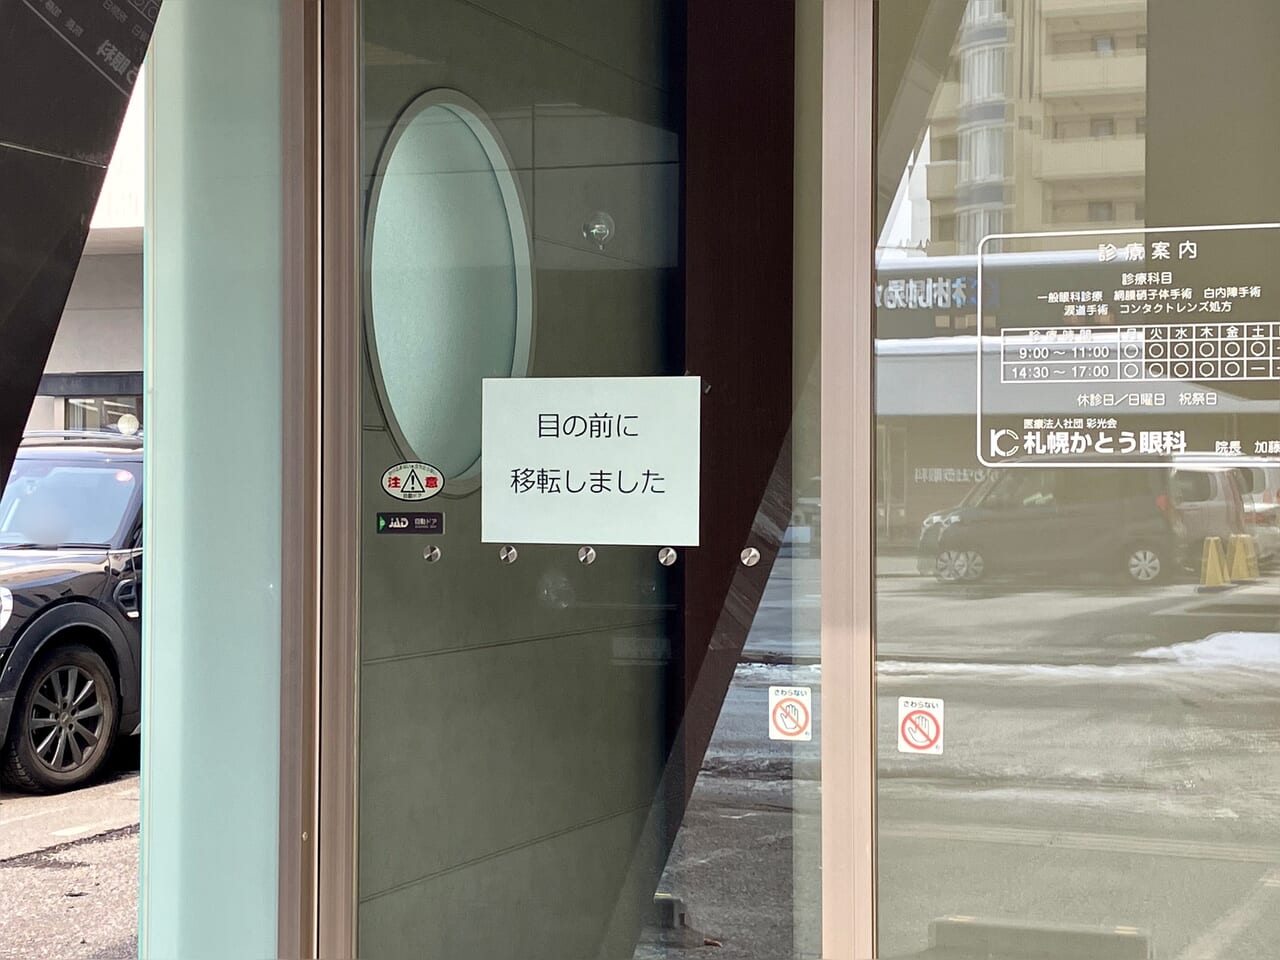 「札幌かとう眼科」が目の前の新しい建物にリニューアル開院しましたよ。